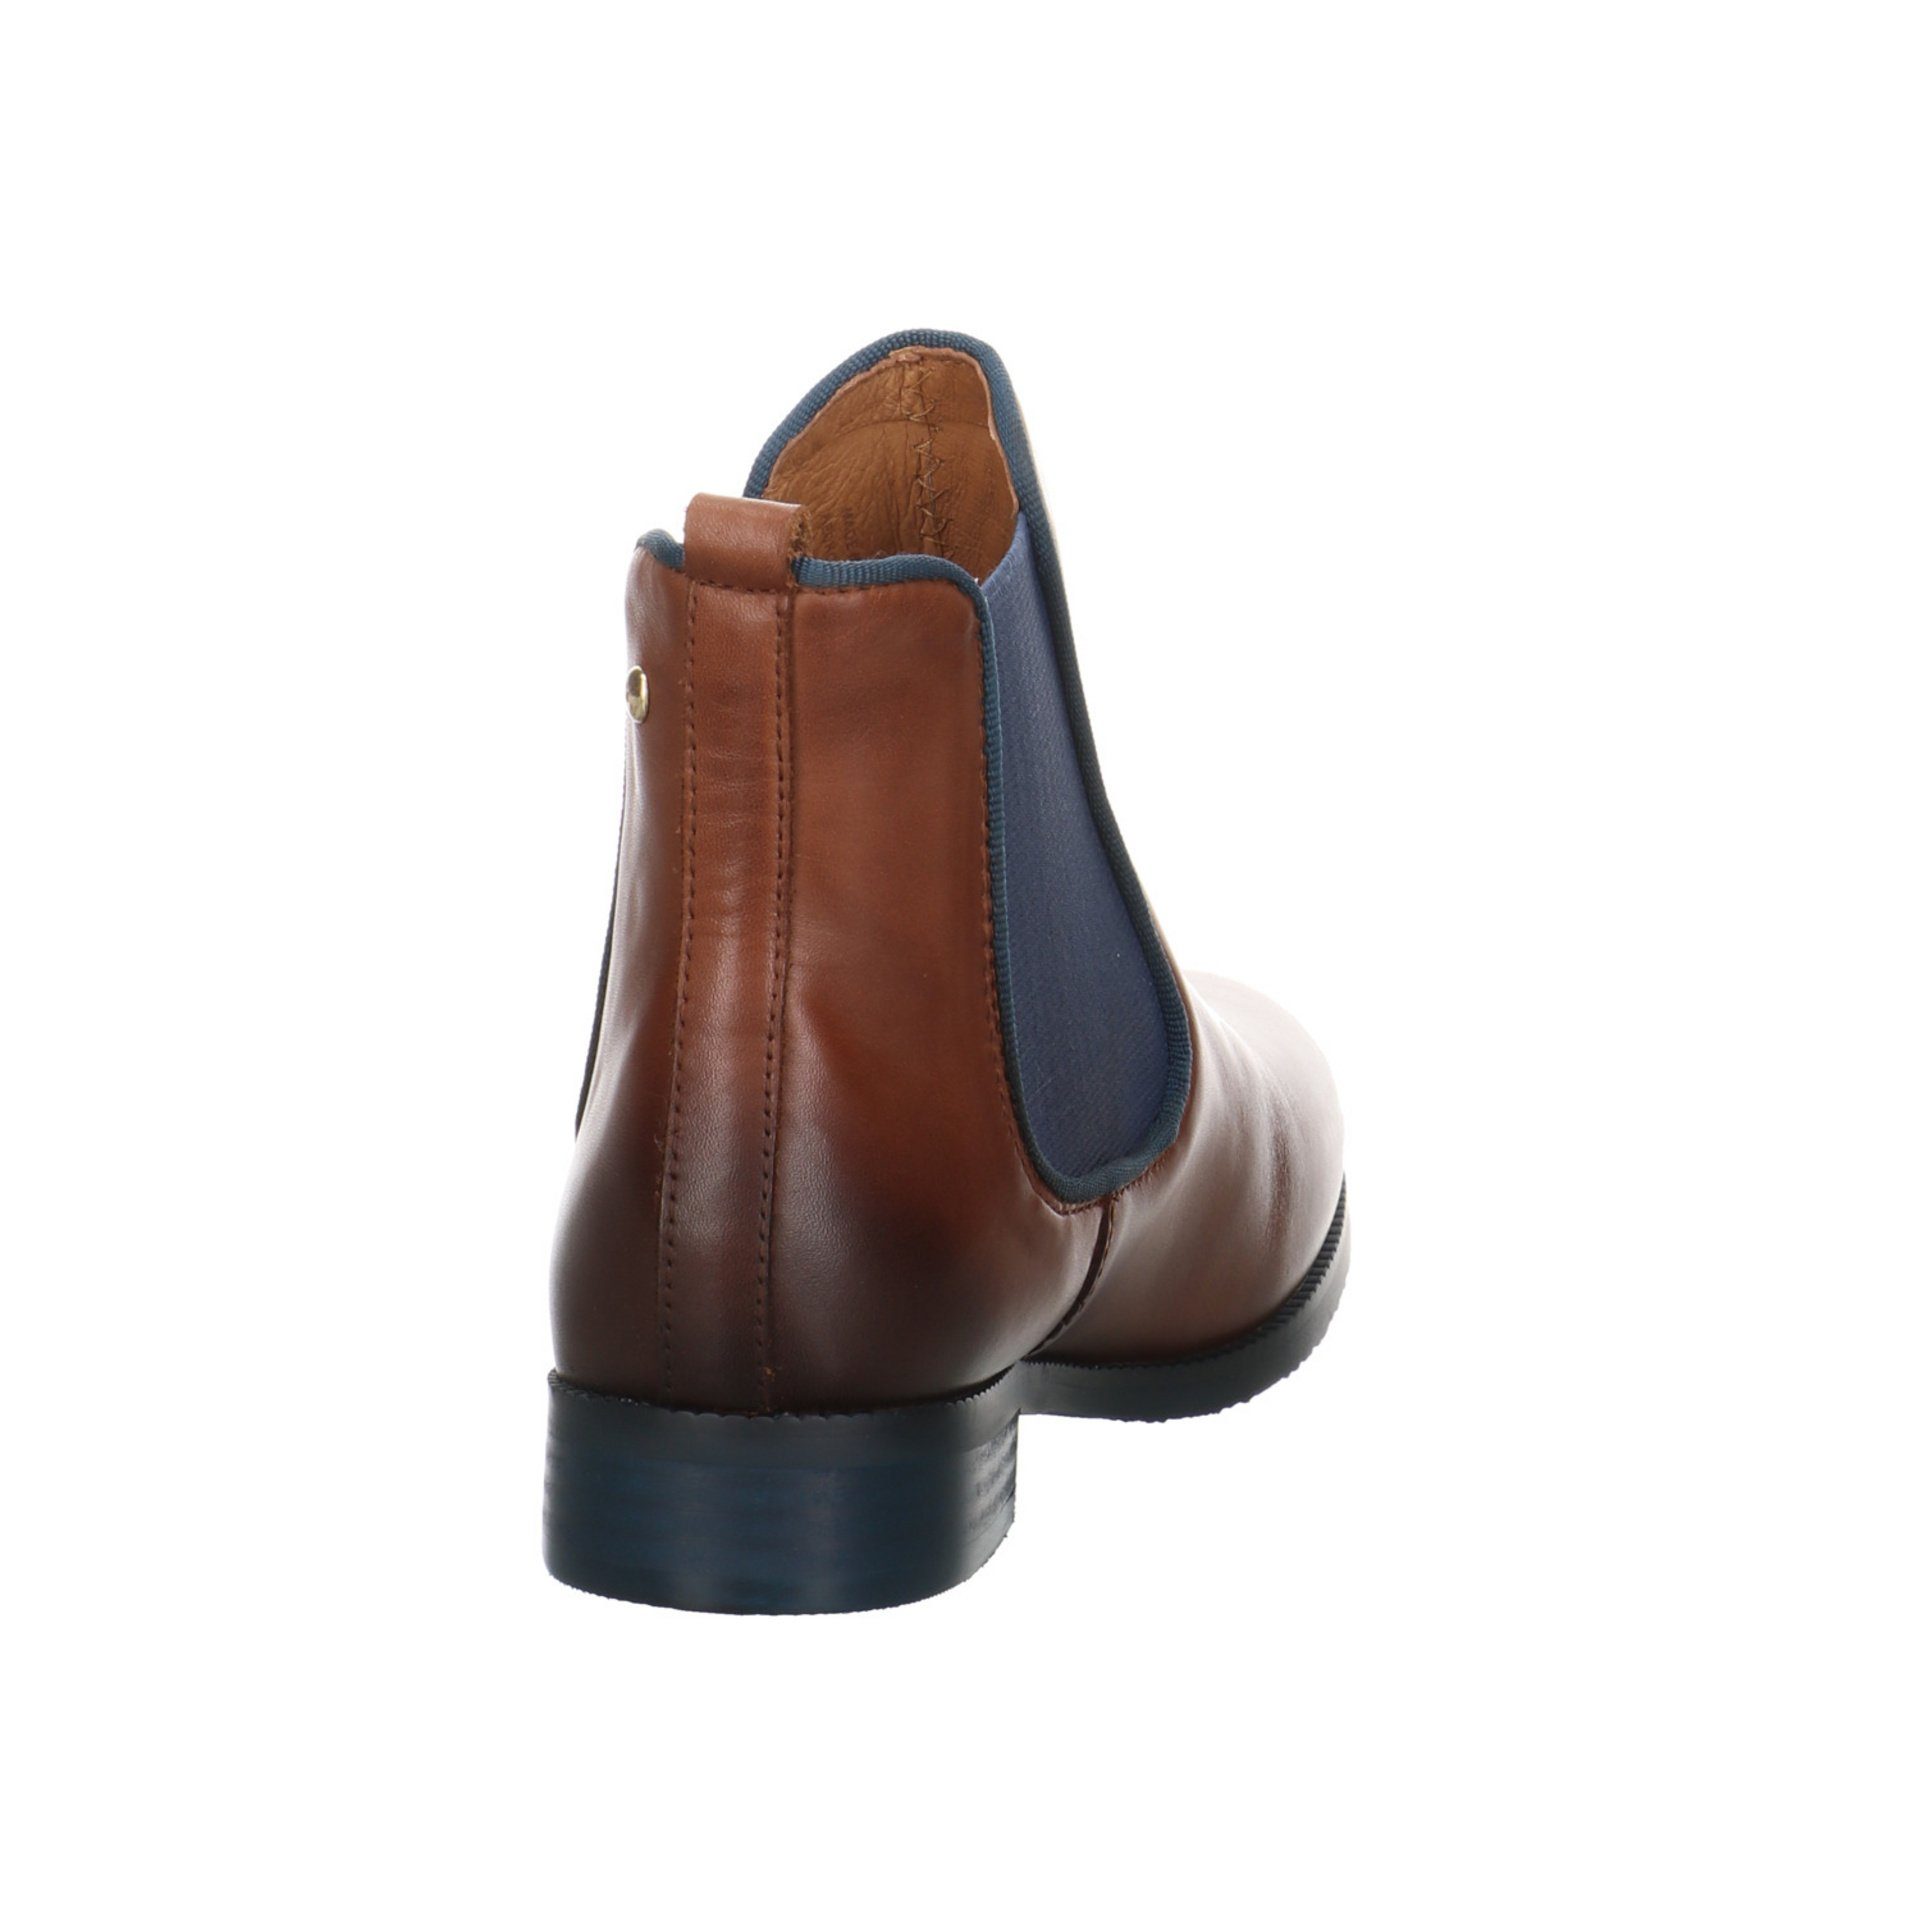 PIKOLINOS Damen Stiefeletten Schuhe Royal Stiefelette Braun Boots Leder-/Textilkombination Chelsea